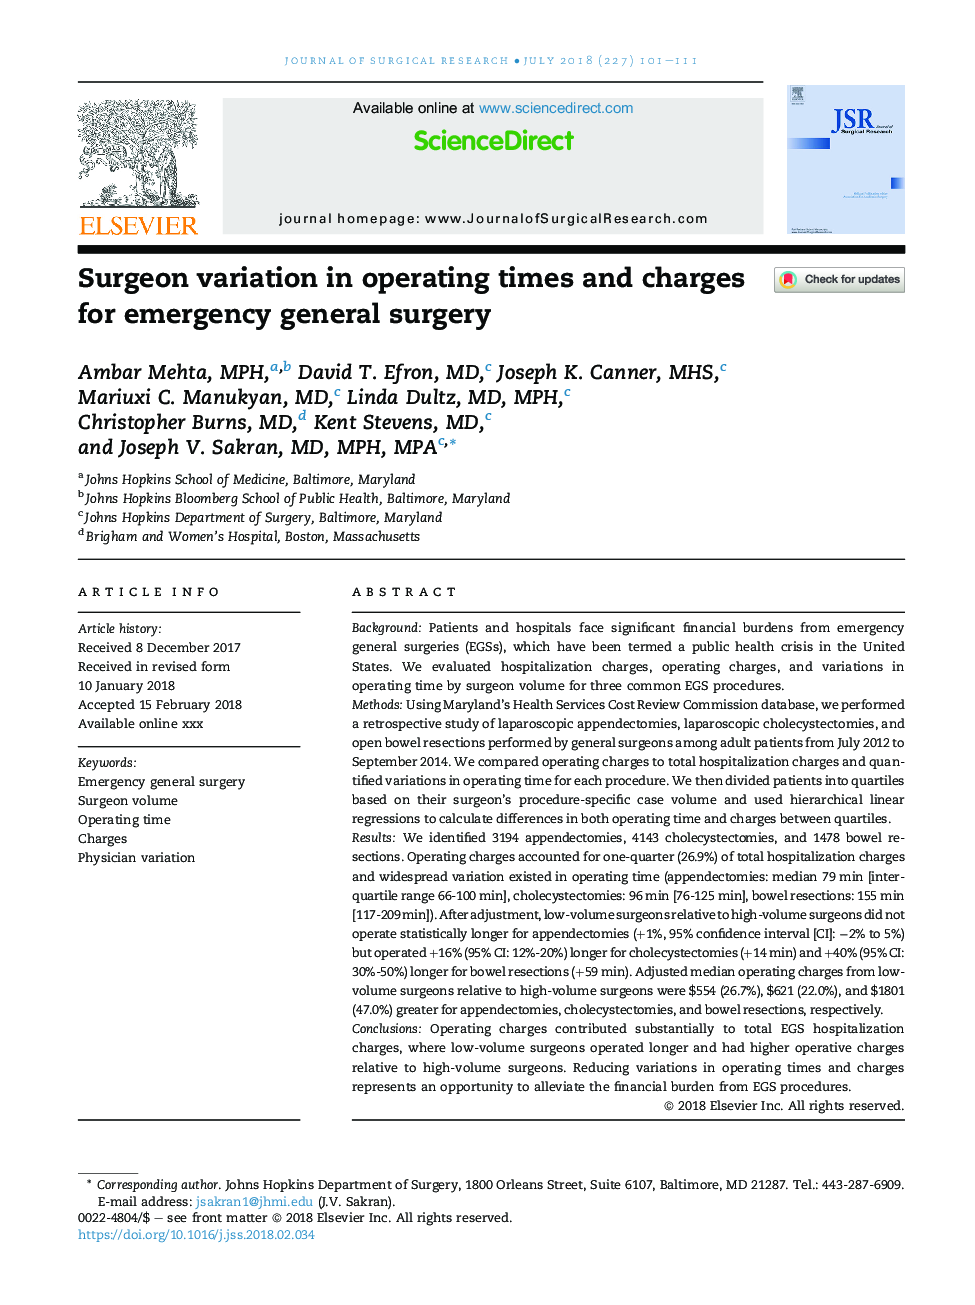 تغییرات جراح در زمان های عمل و هزینه های جراحی عمومی اورژانس 